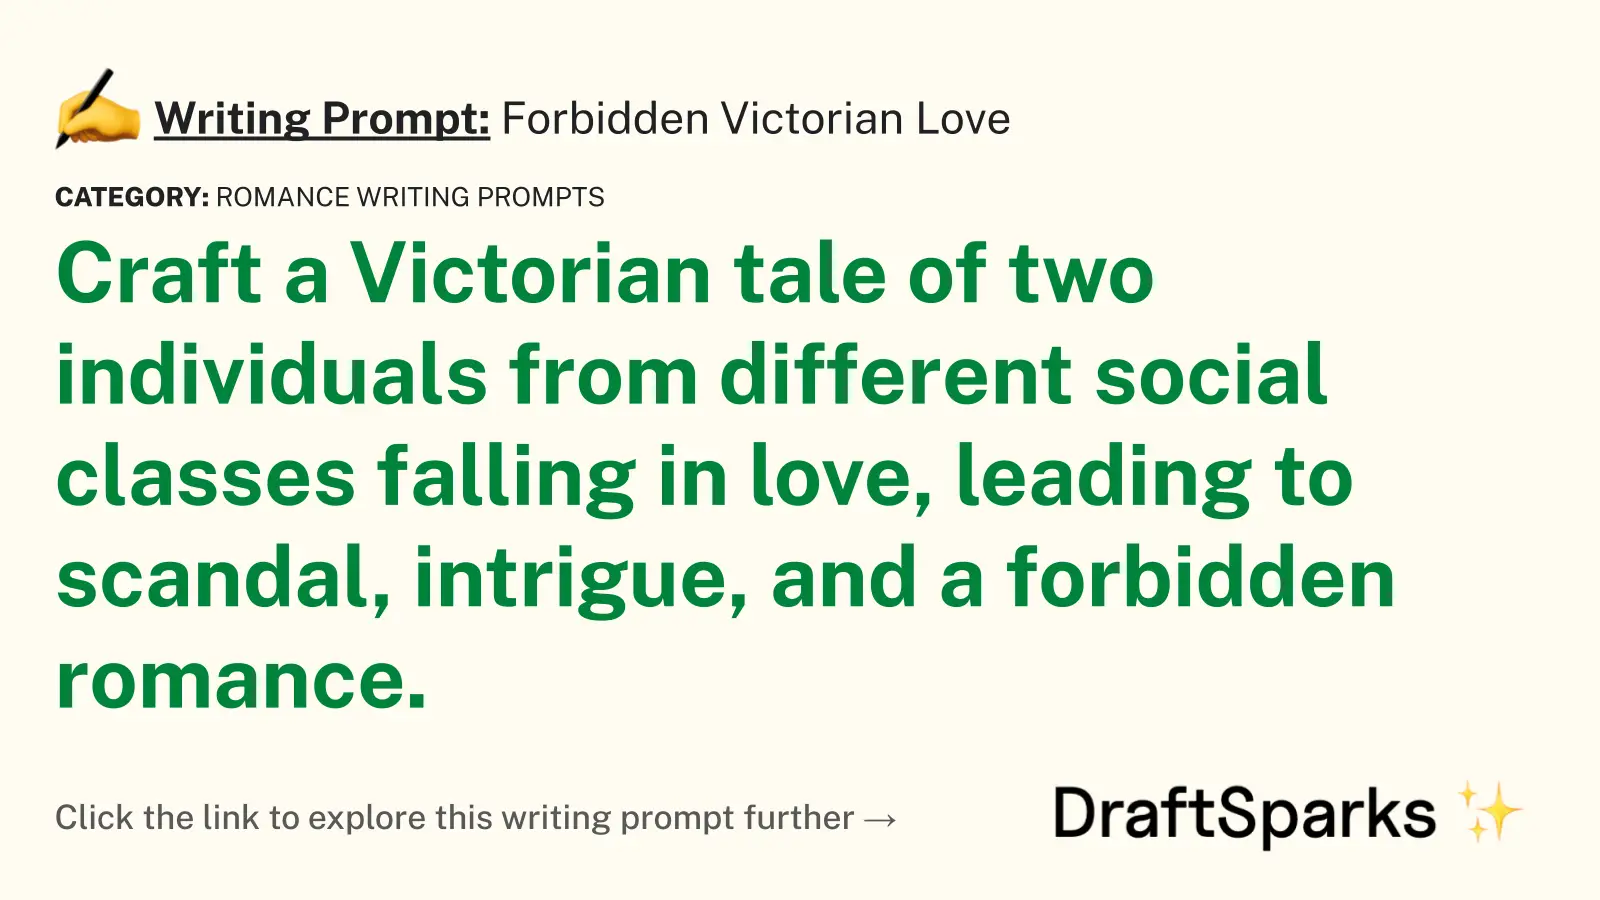 Forbidden Victorian Love